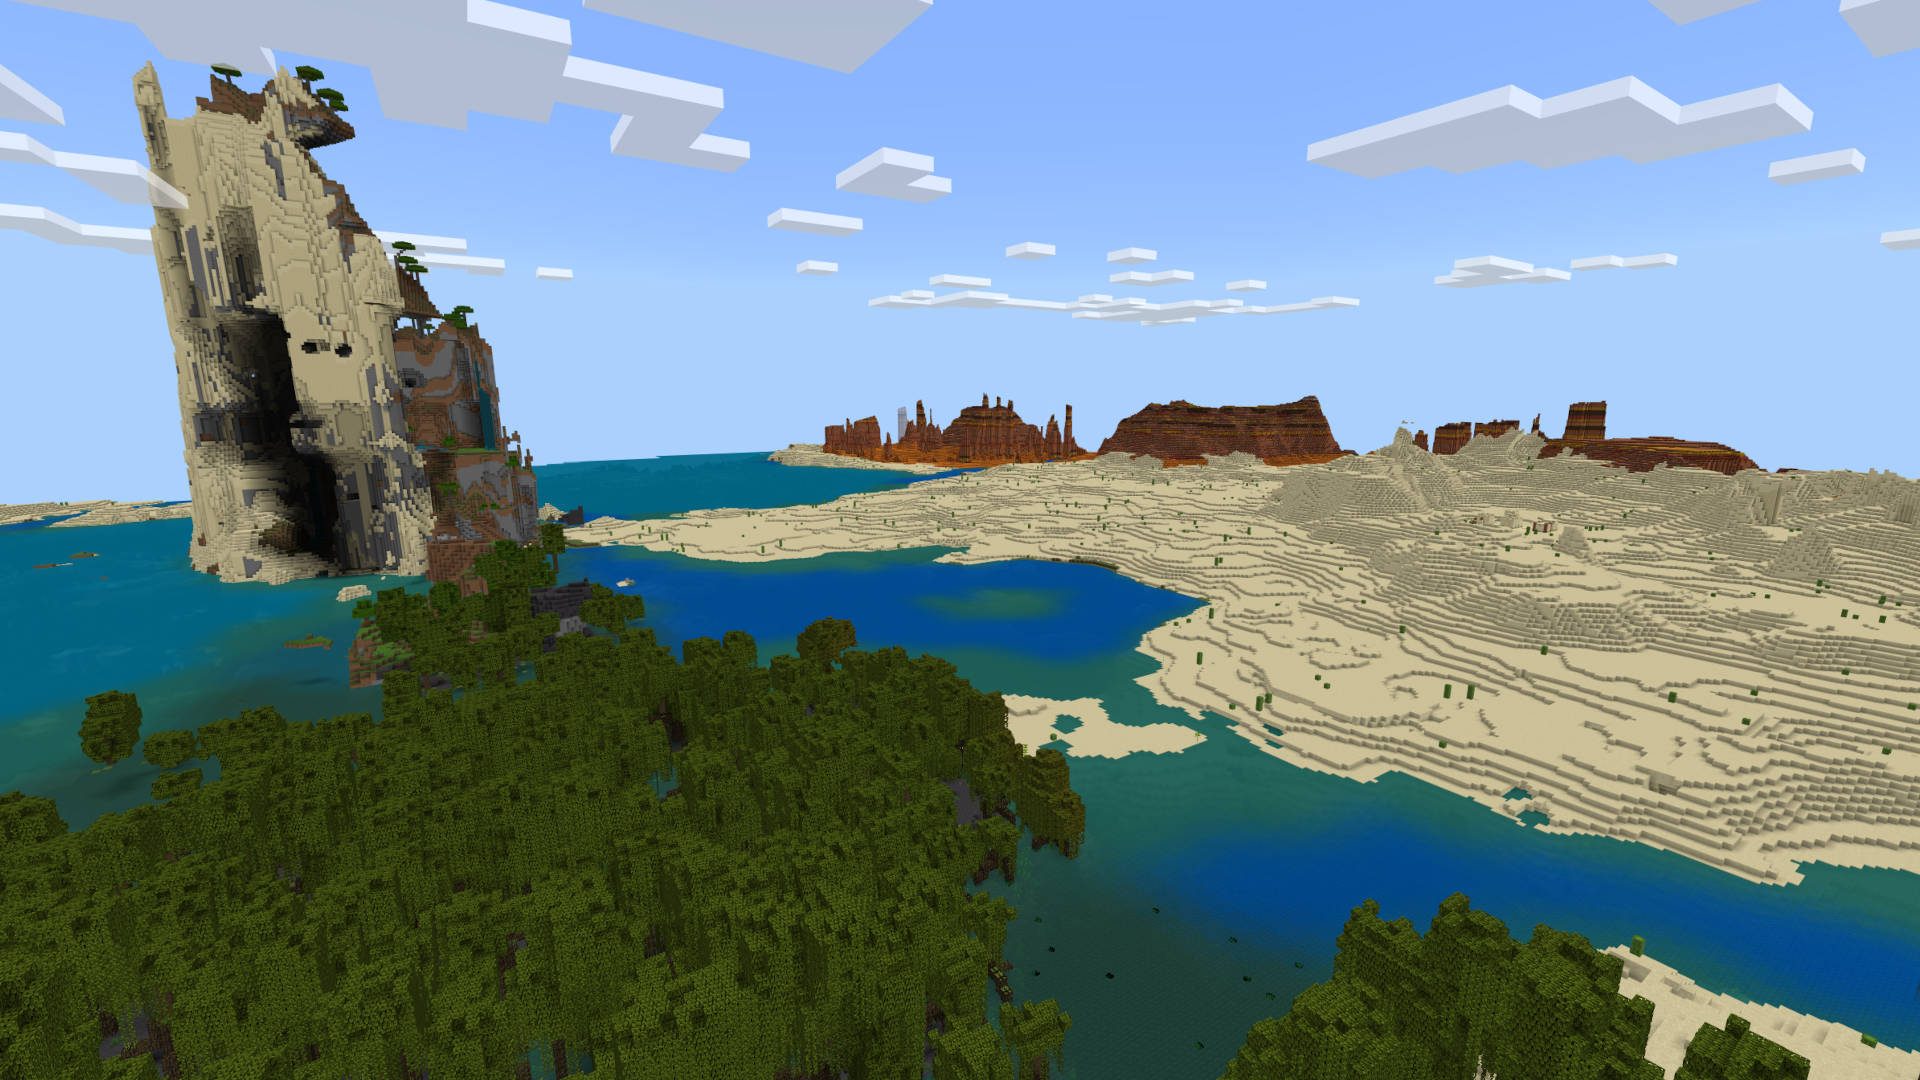 सर्वश्रेष्ठ Minecraft बीज: पानी के बीच में एक शिखर, जो दलदल और रेगिस्तान से घिरा हुआ है। पृष्ठभूमि में रेगिस्तान है और दूरी में दलदली भूमि है।